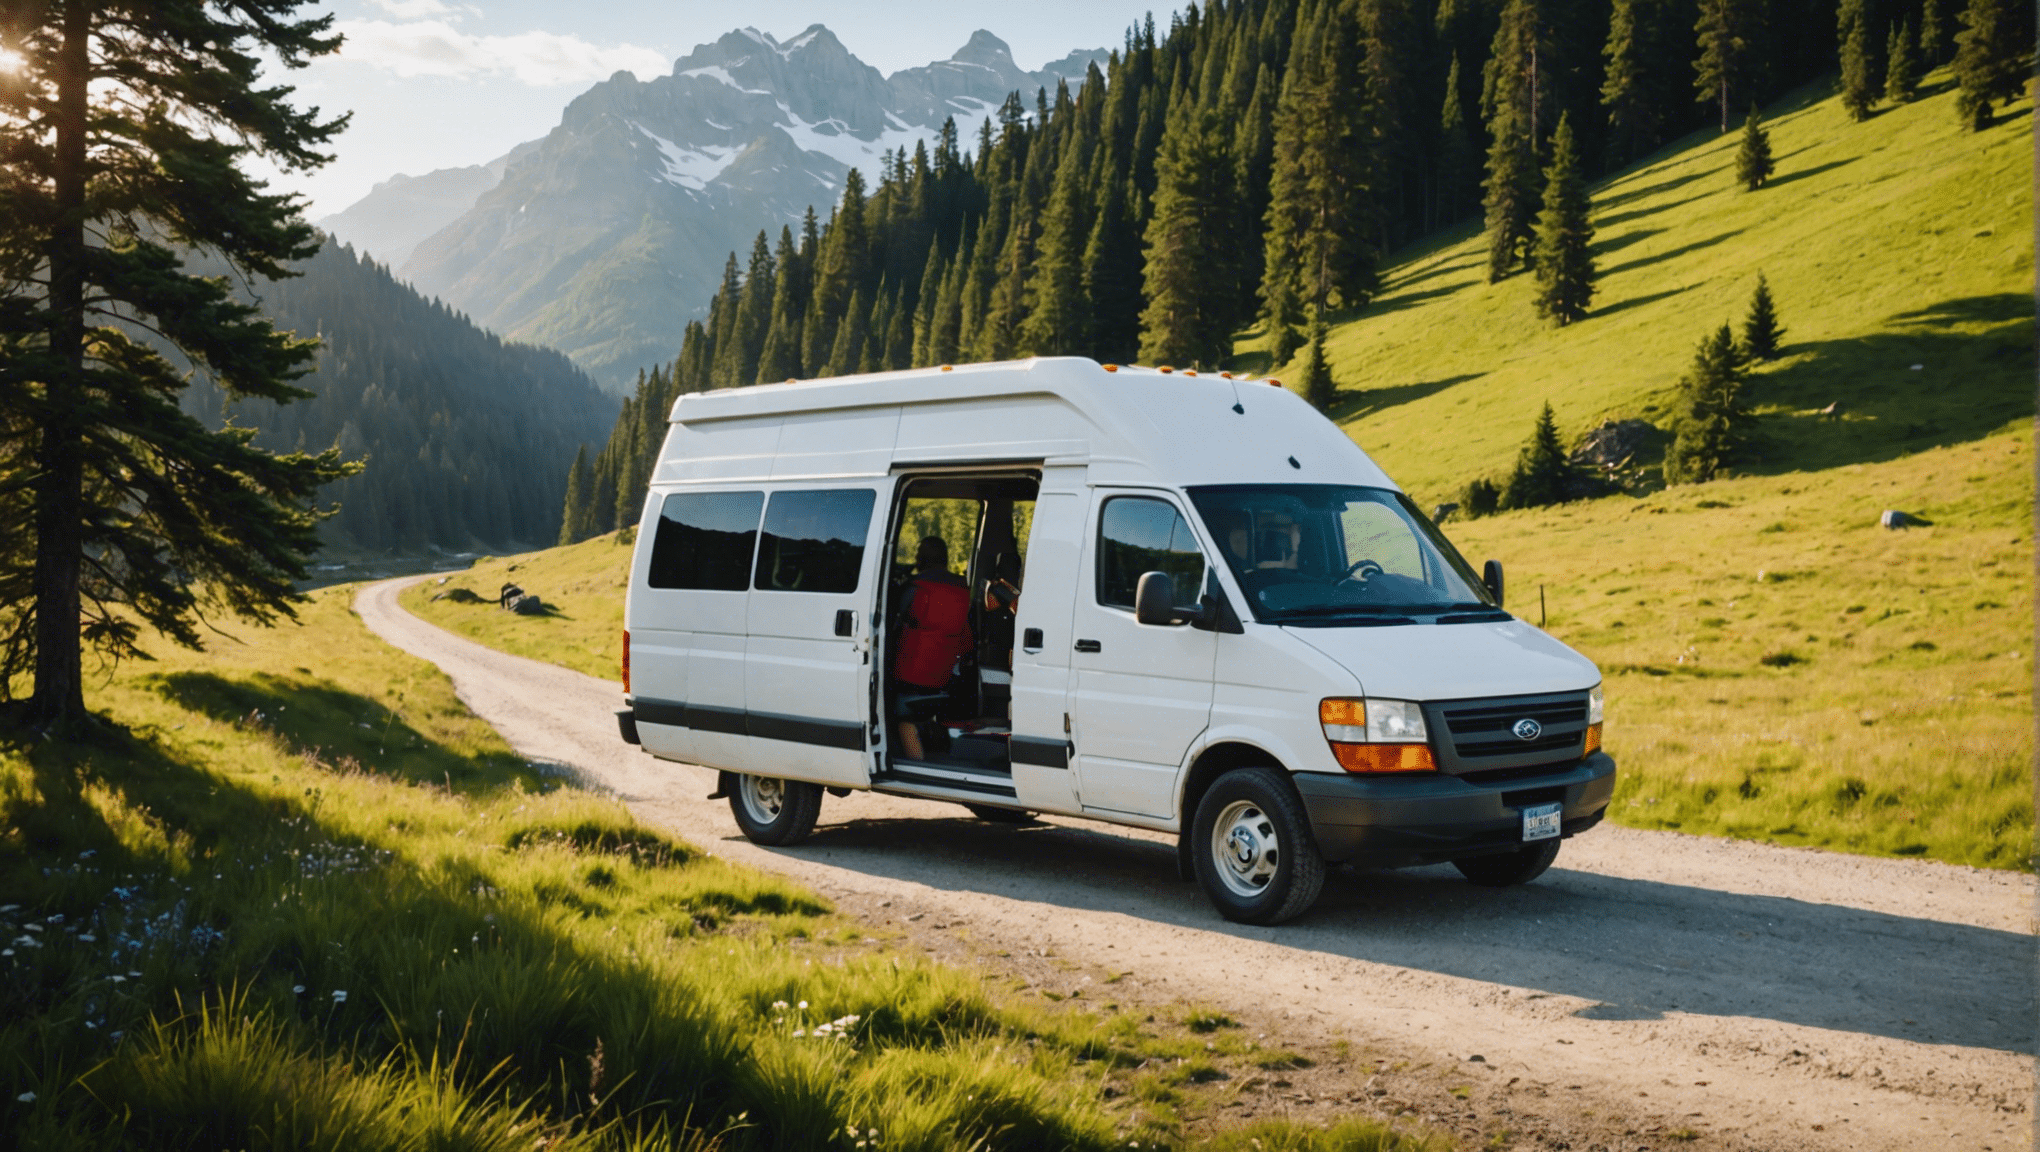 descubre nuestros consejos para vivir una aventura memorable viajando en furgoneta. consejos prácticos, itinerarios inspiradores y consejos para una experiencia inolvidable.